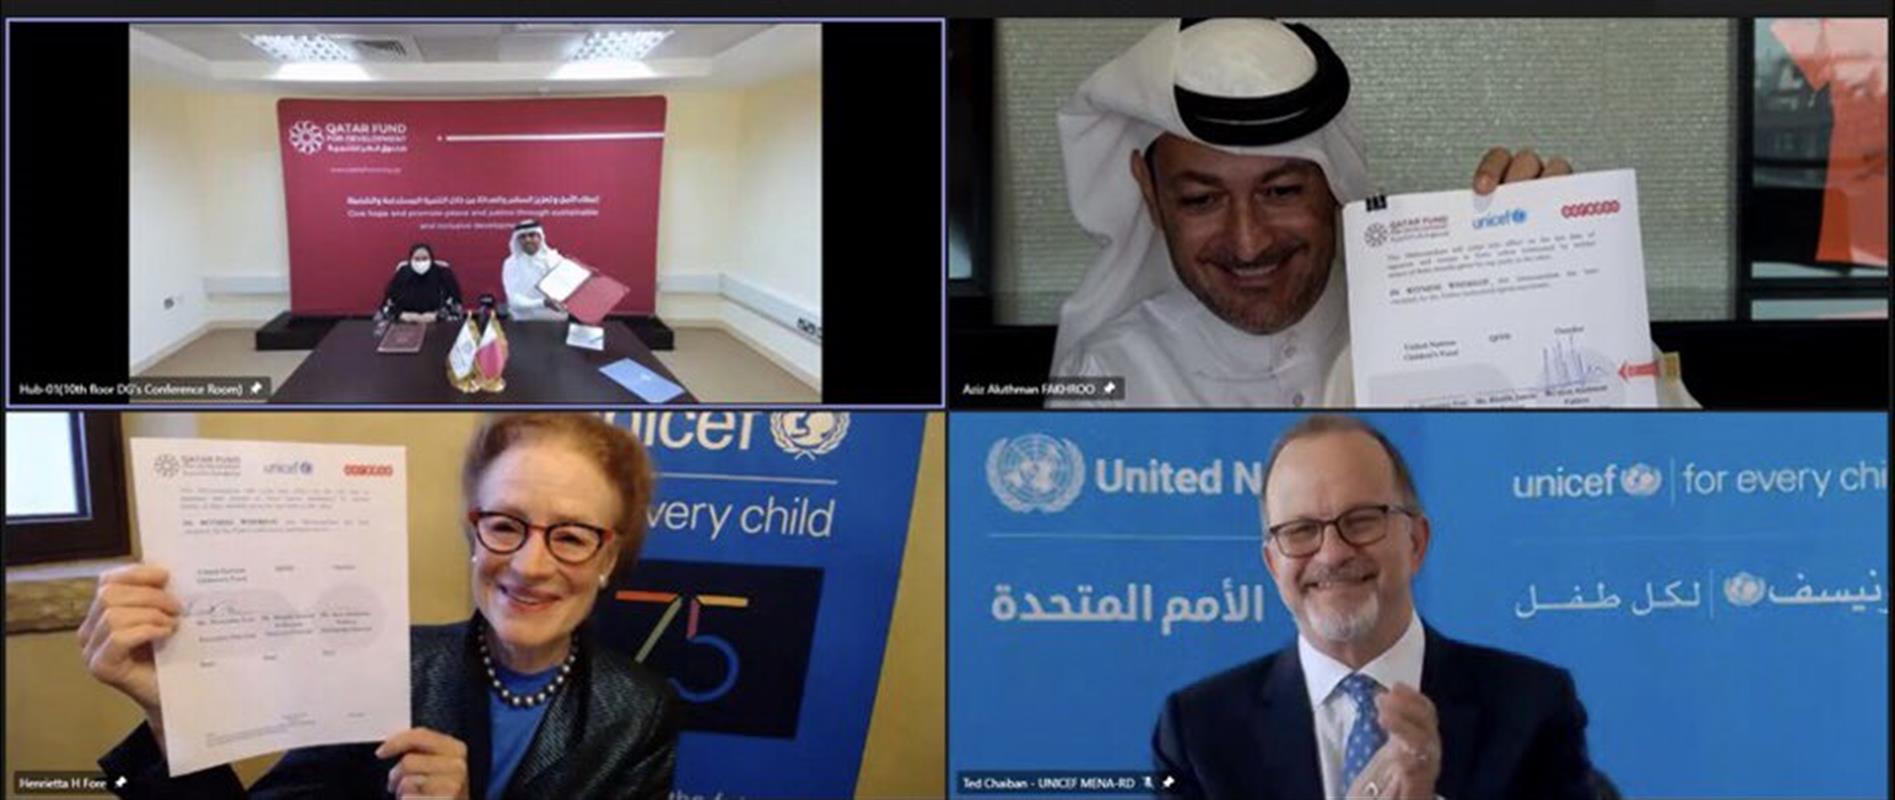 صندوق قطر للتنمية يوقع اتفاقية شراكة مع مجموعة "أريدُ" ومنظمة اليونيسف لدعم الأطفال حول العالم